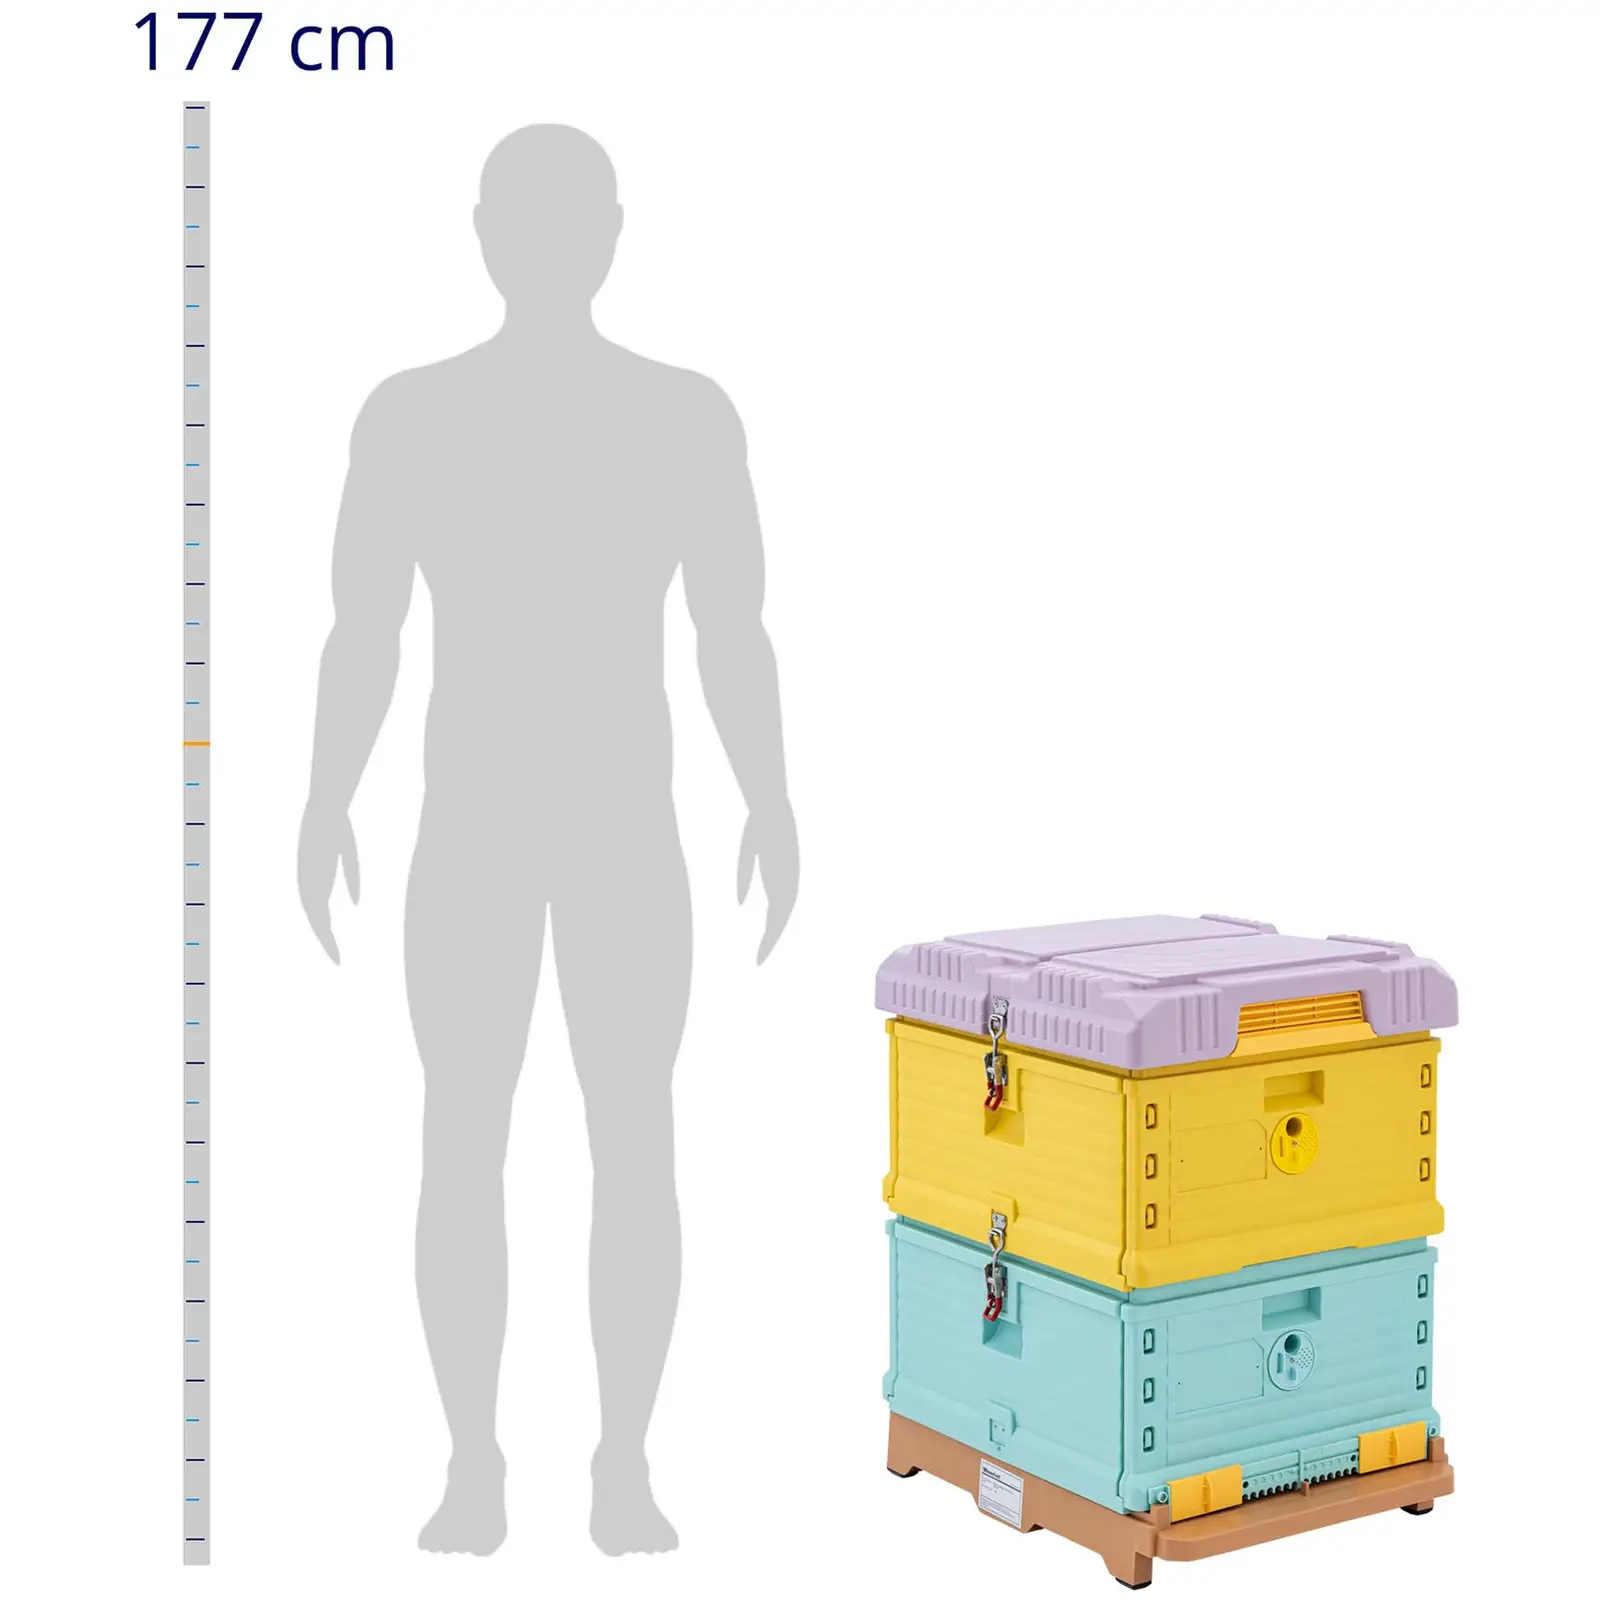 Méhkaptár - műanyag (polipropilén) - 54 x 44 cm - hőszigeteléssel